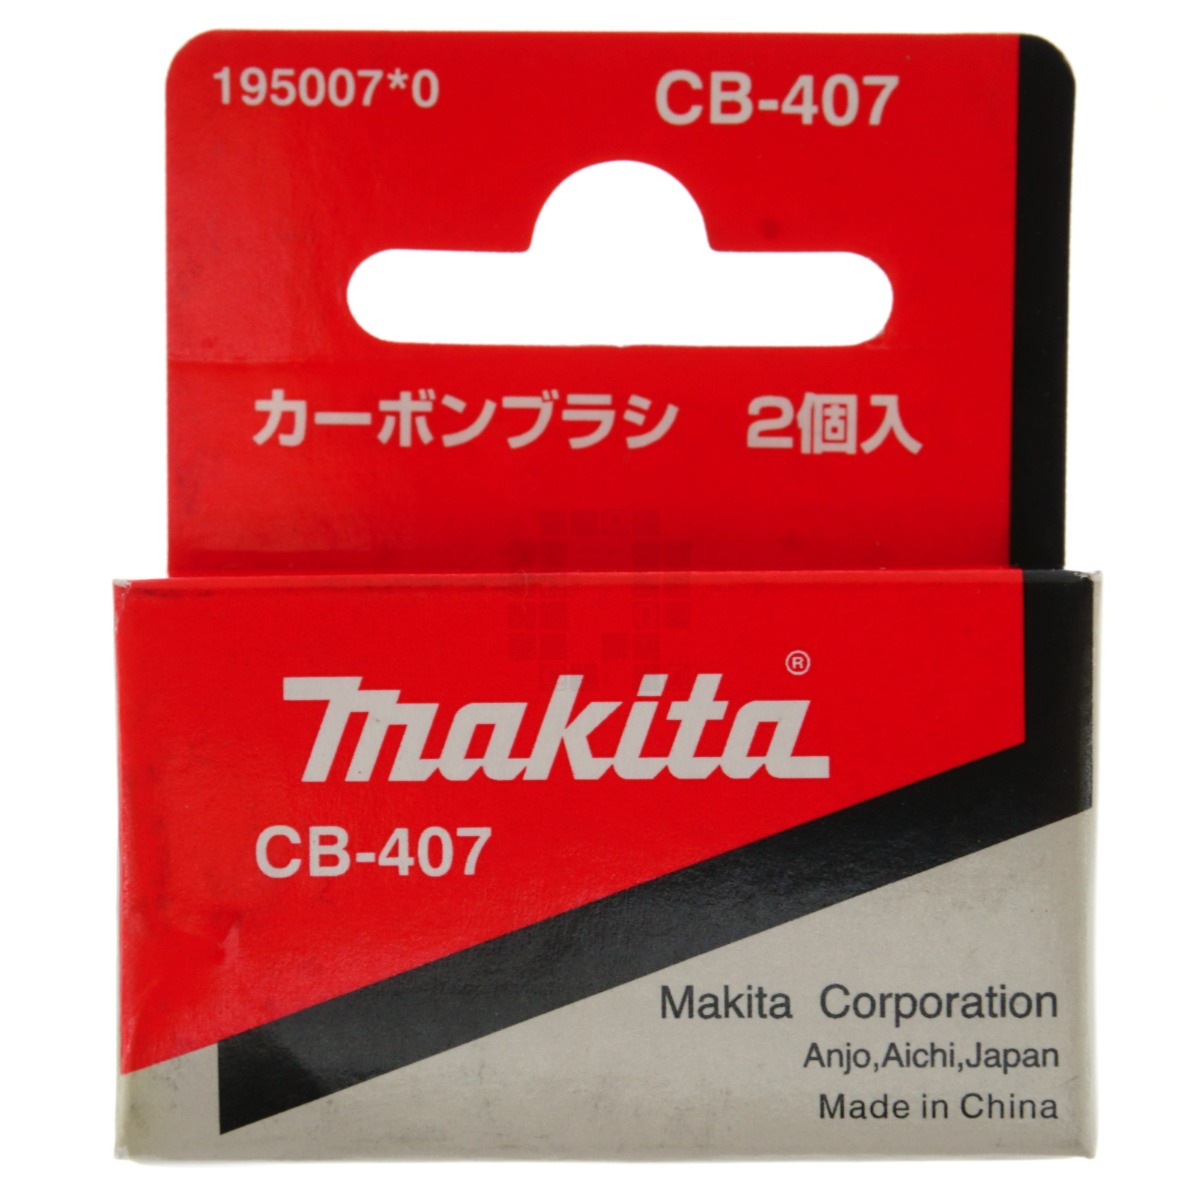 Makita CB407 Carbon Brush Assembly Set, 195007-0